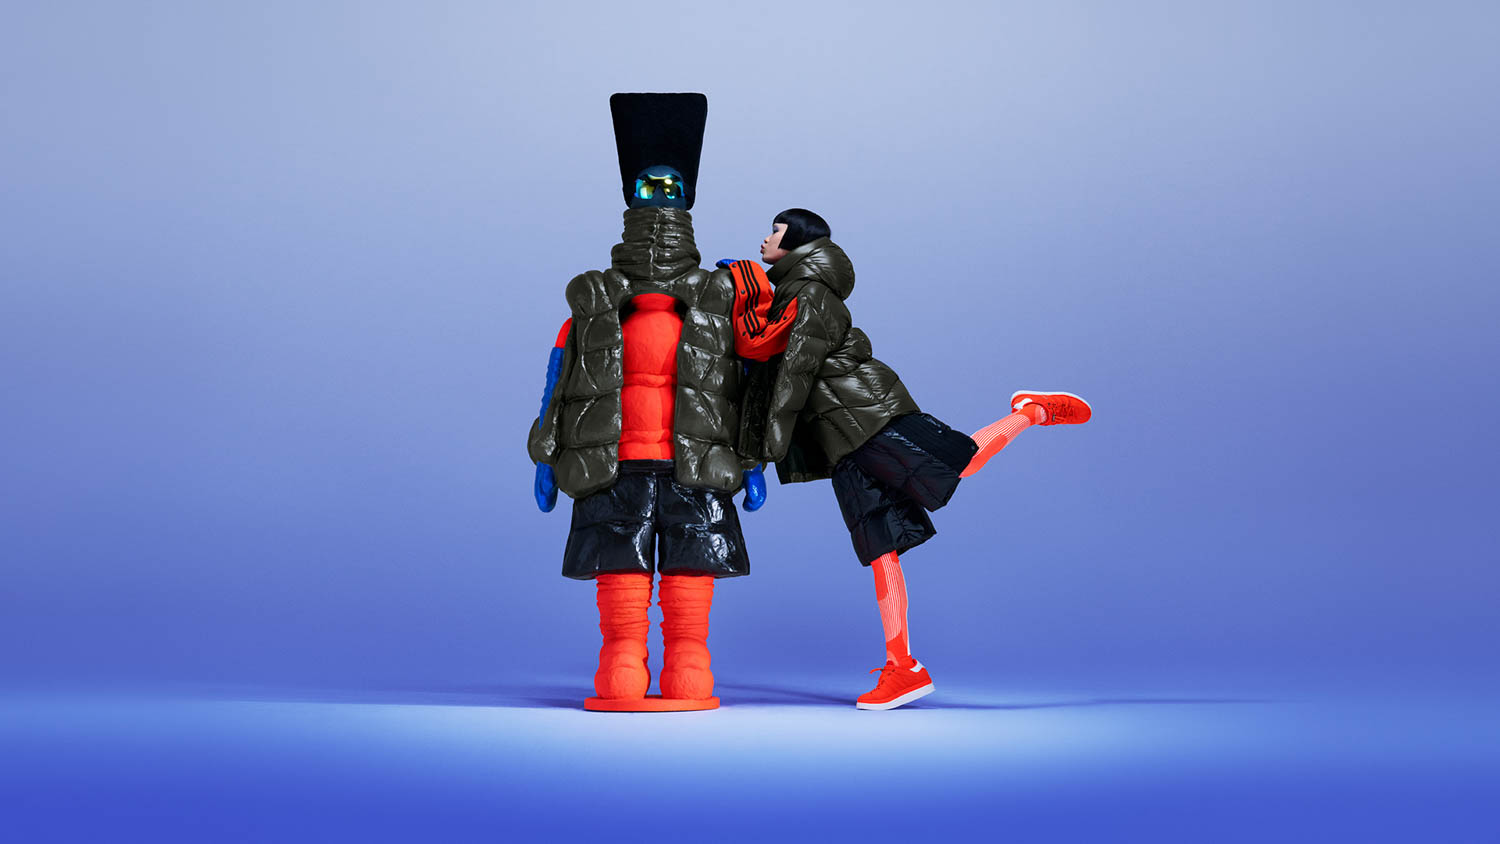 Moncler X Adidas Originals è la nuova collaborazione, concepita per l'esplorazione. Unisce le identità uniche di questi celebri marchi.